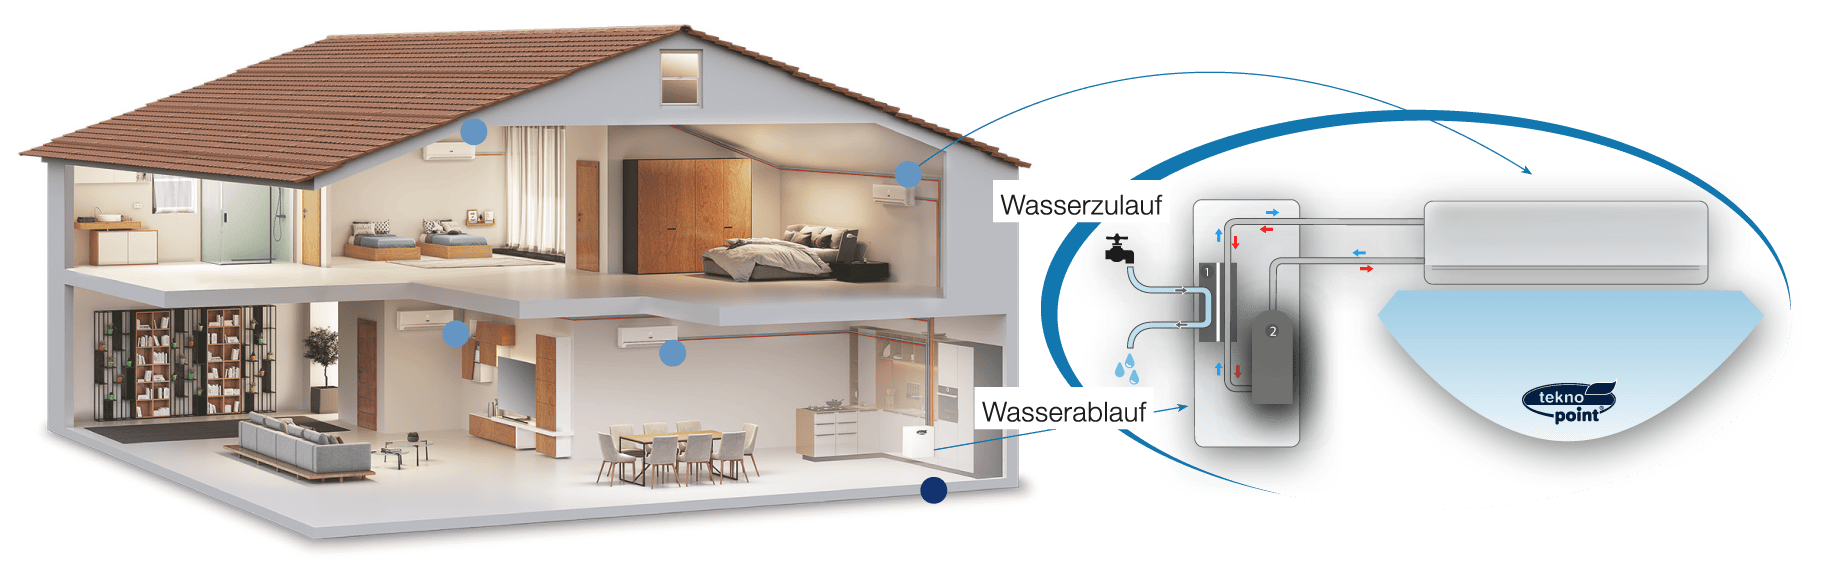 Funktionsweise der Klimaanlage ohne Außengerät - Wasserkreislauf im Haus